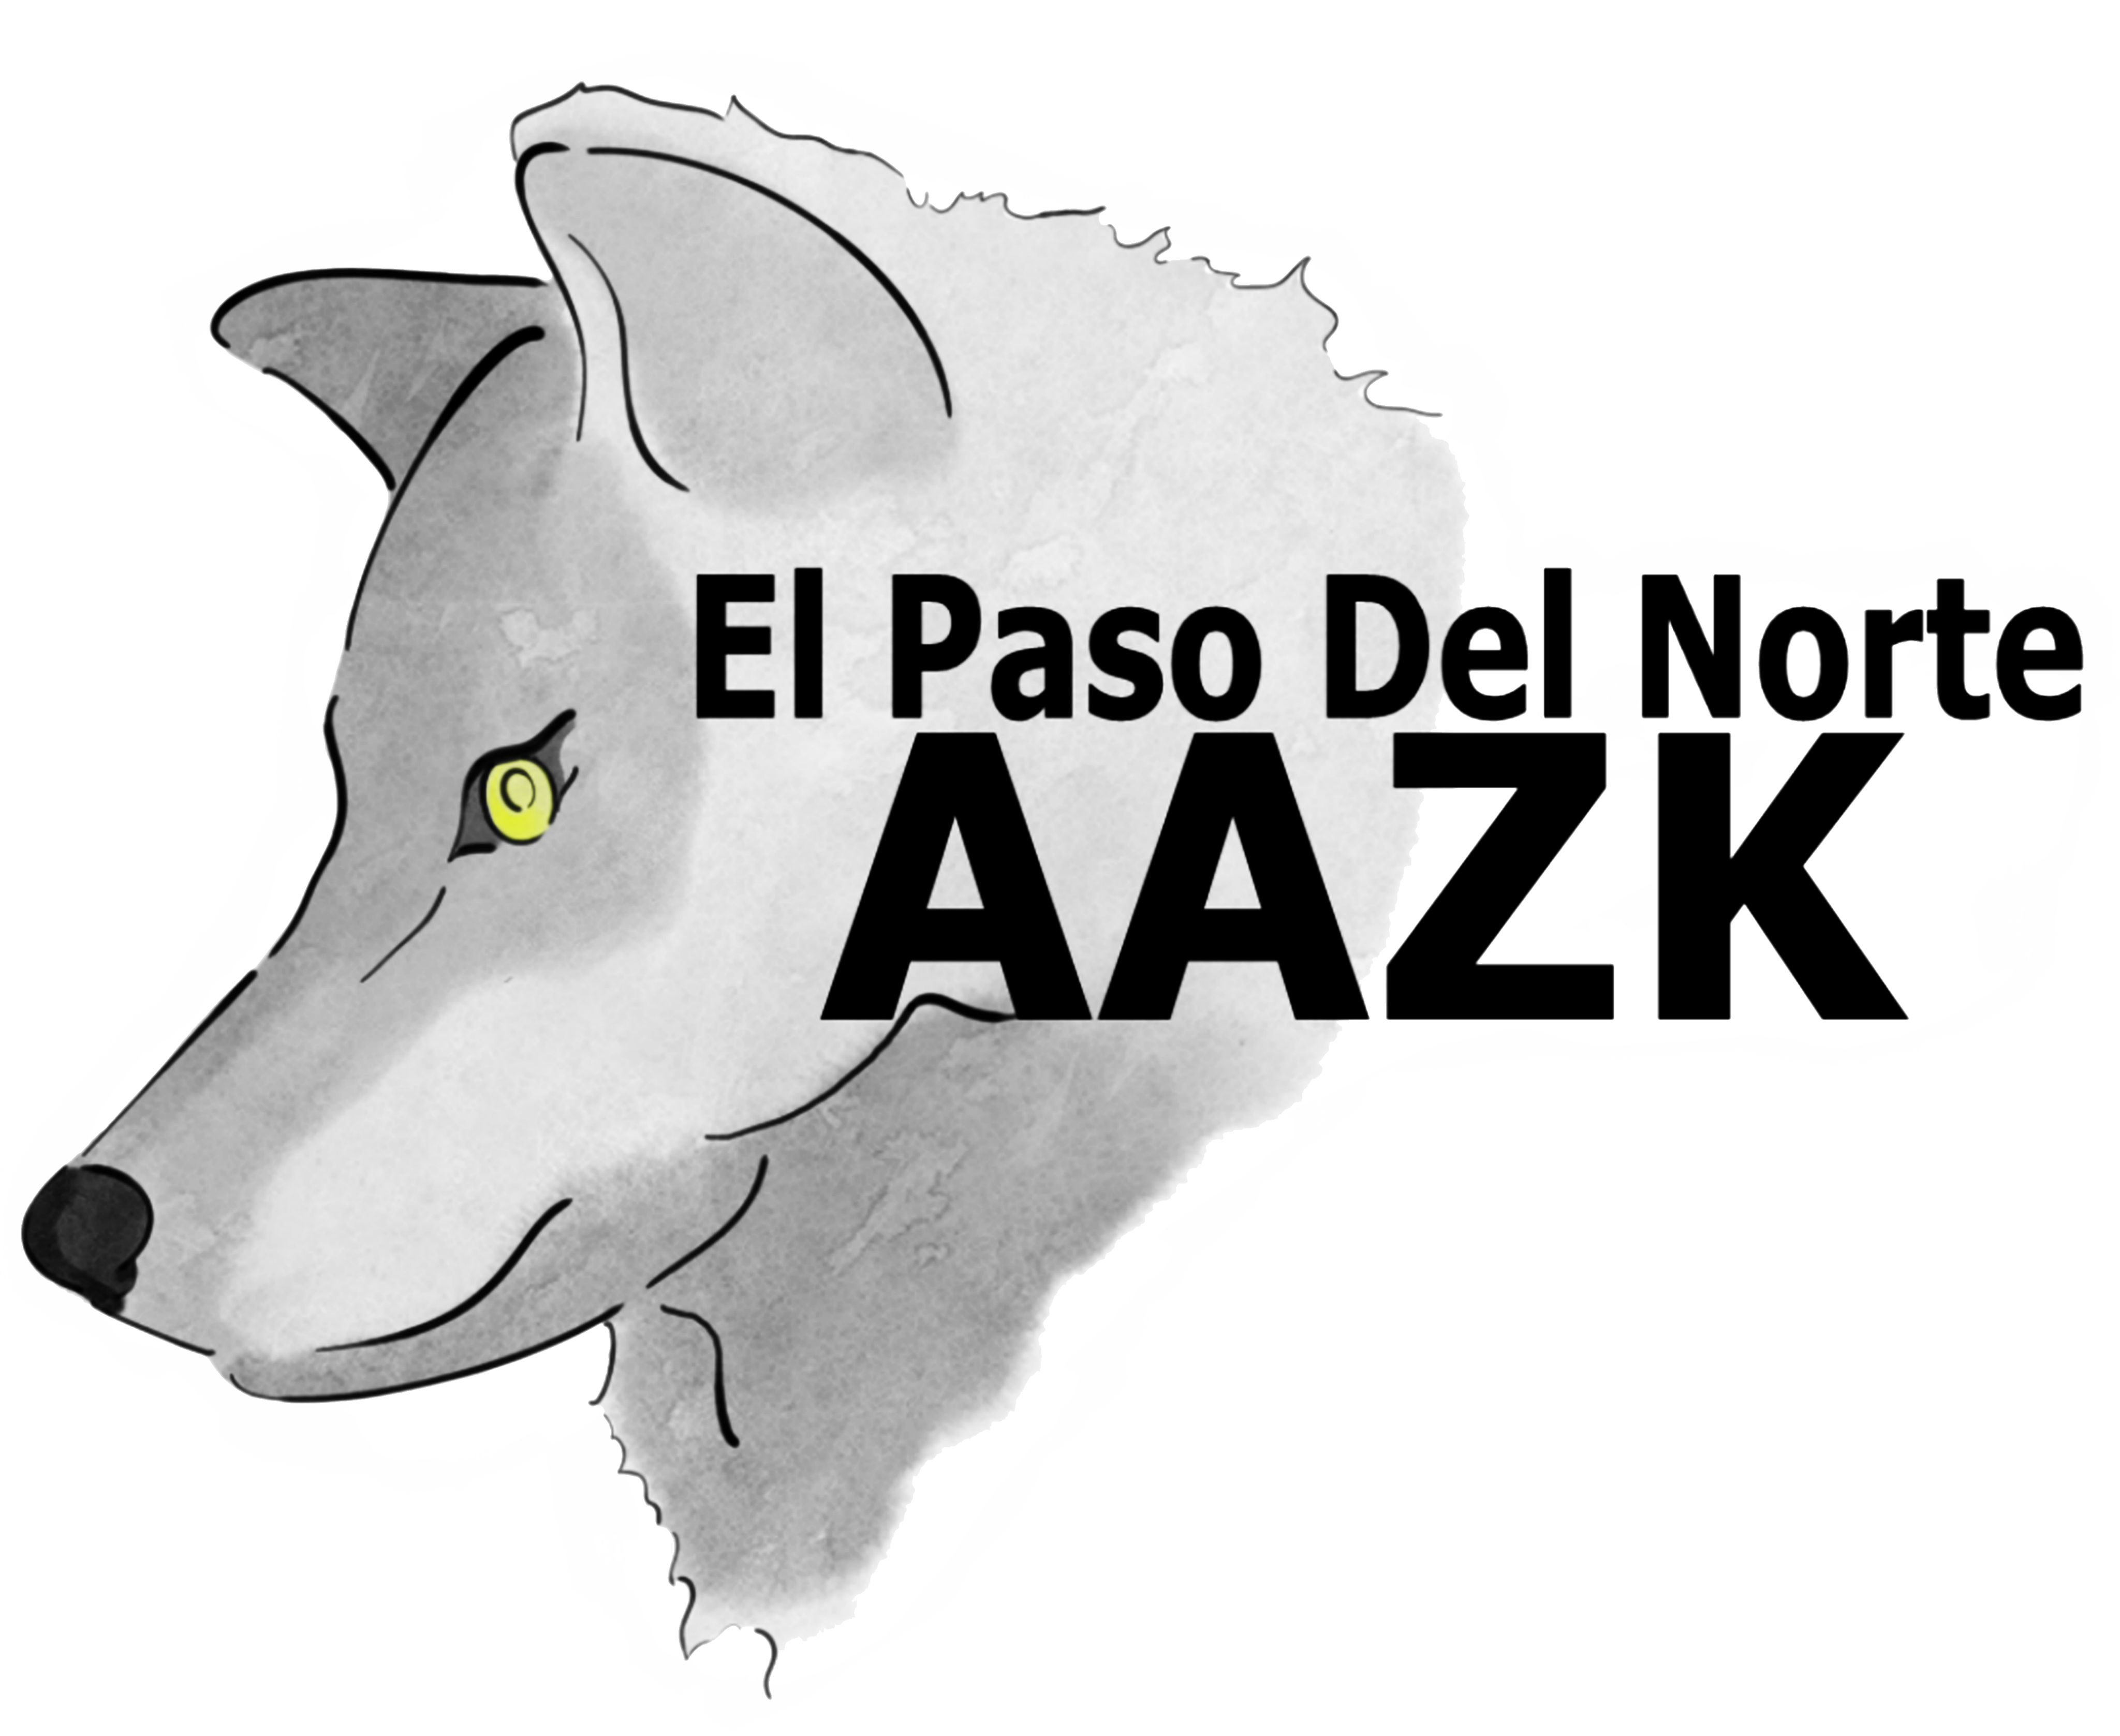 Home | El Paso Del Norte AAZK